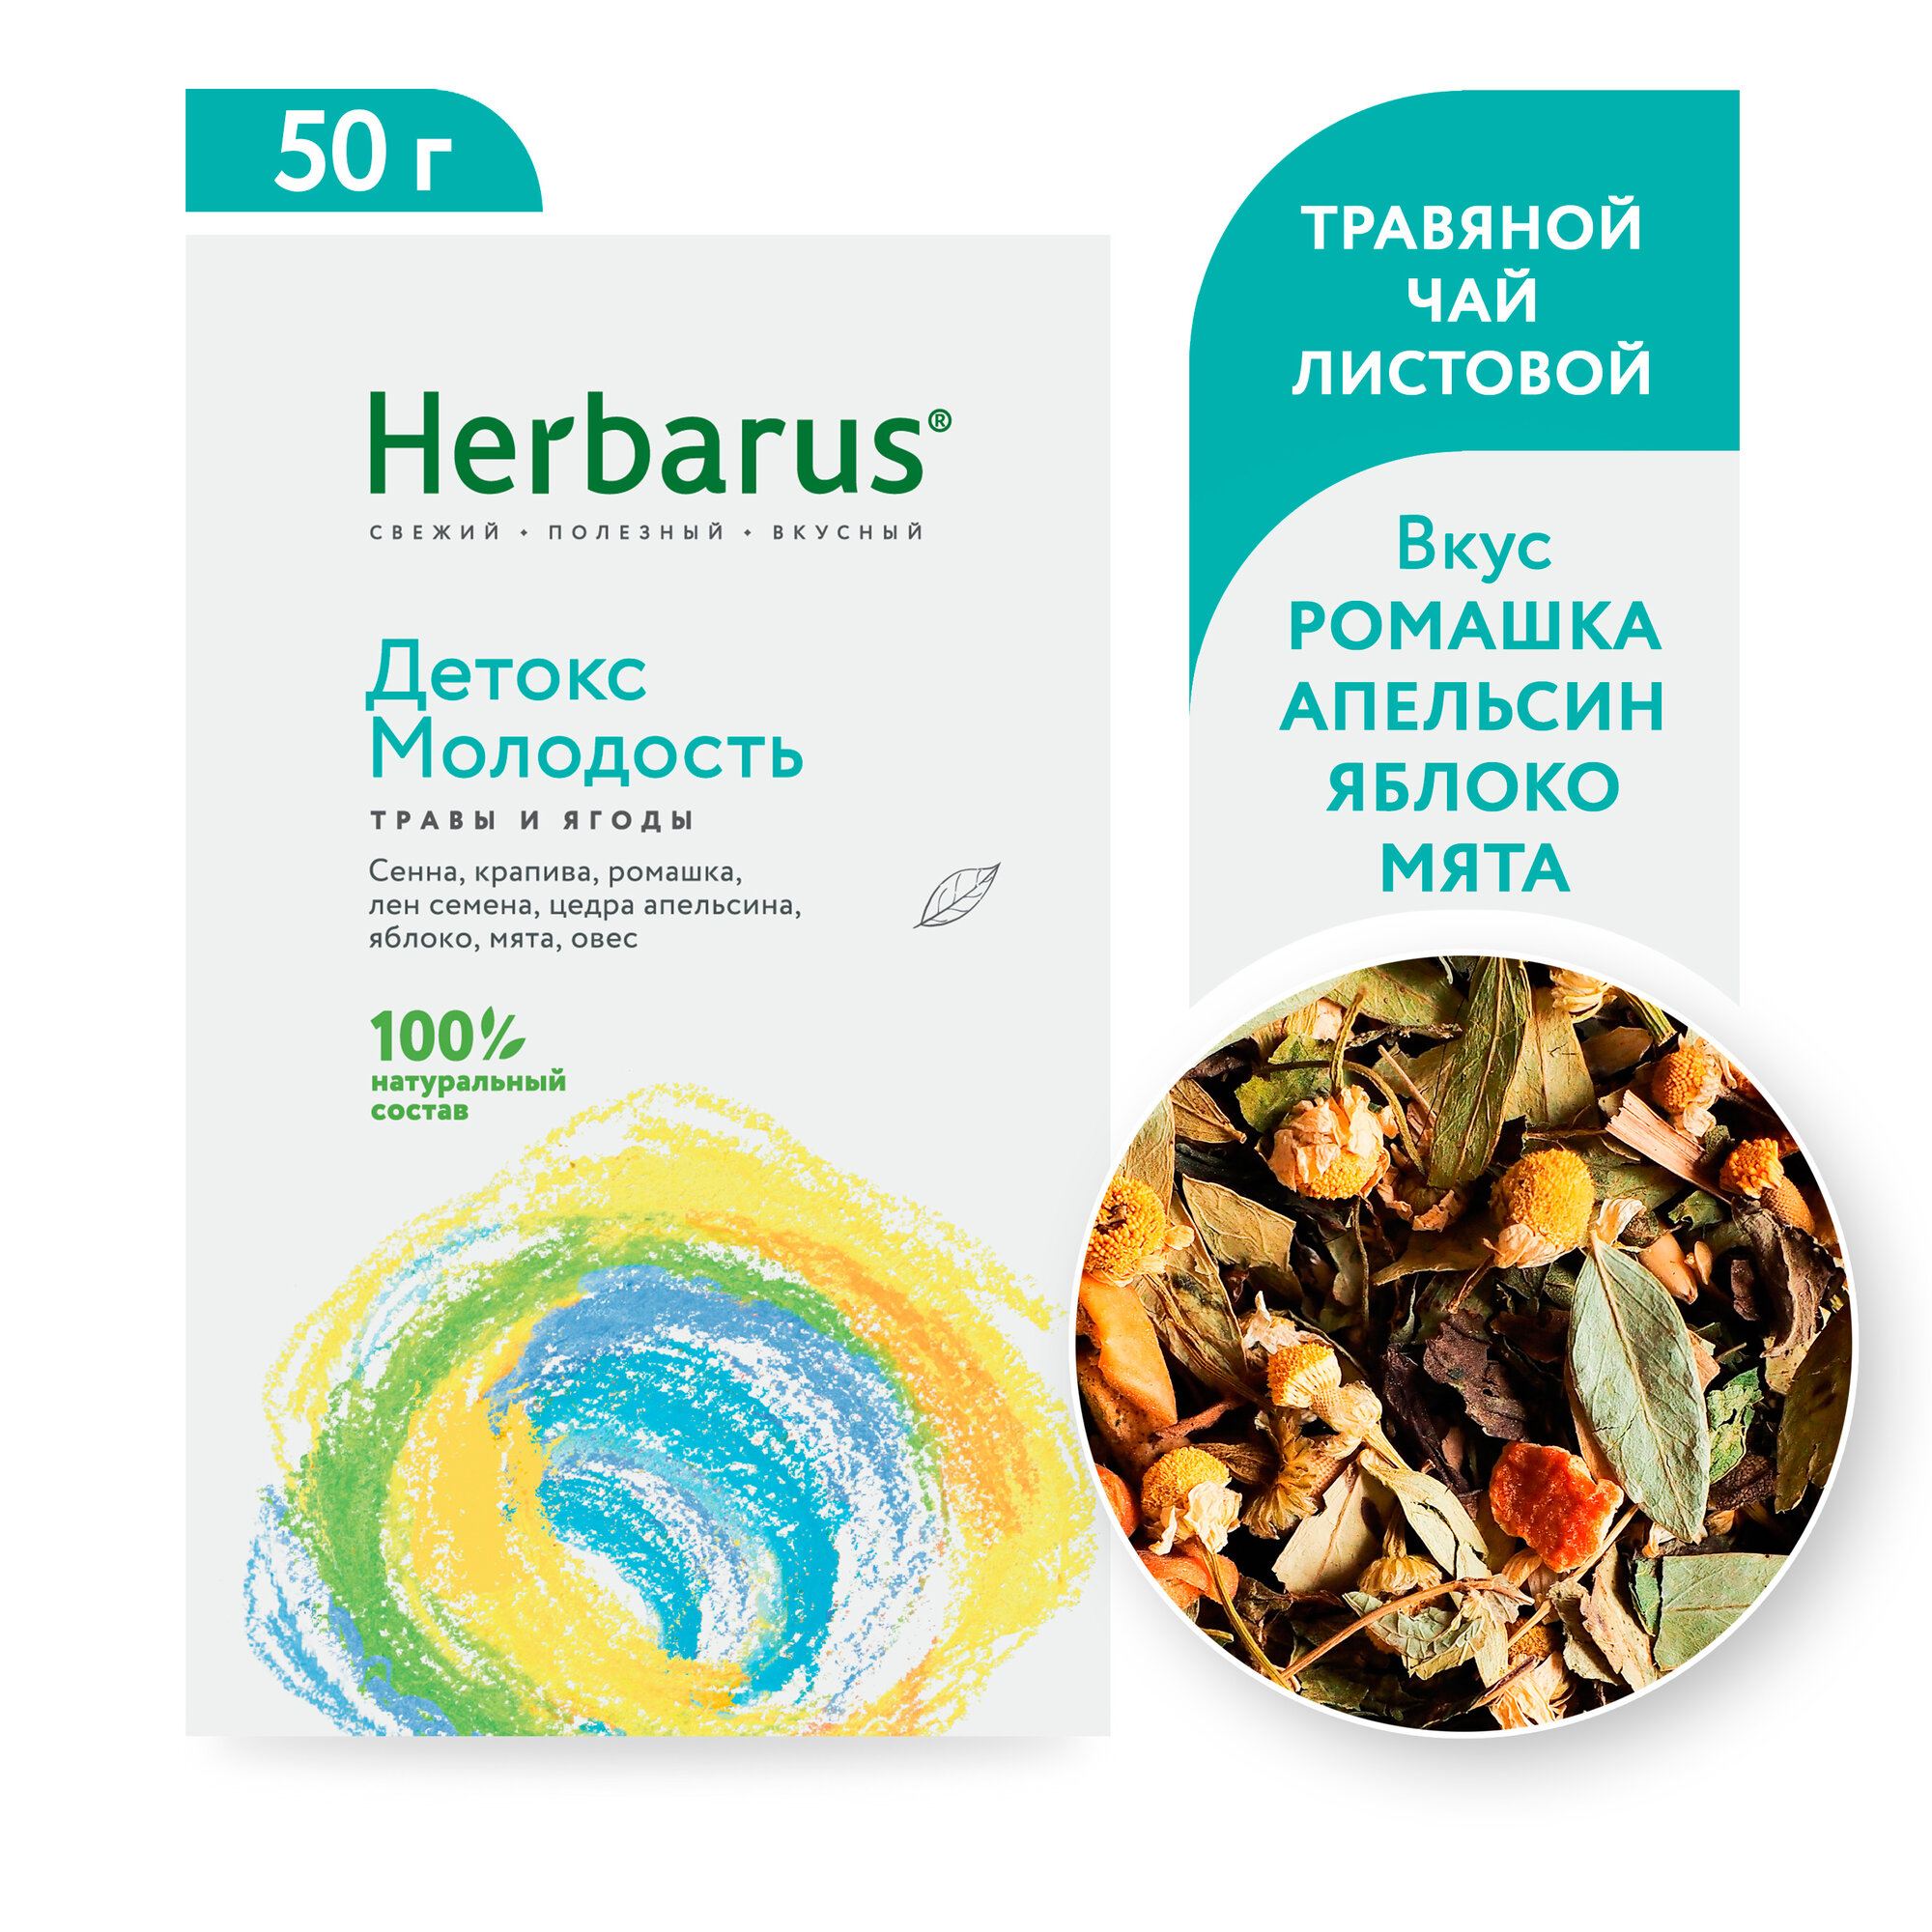 Чайный напиток Herbarus "Детокс Молодость", листовой, 50г.